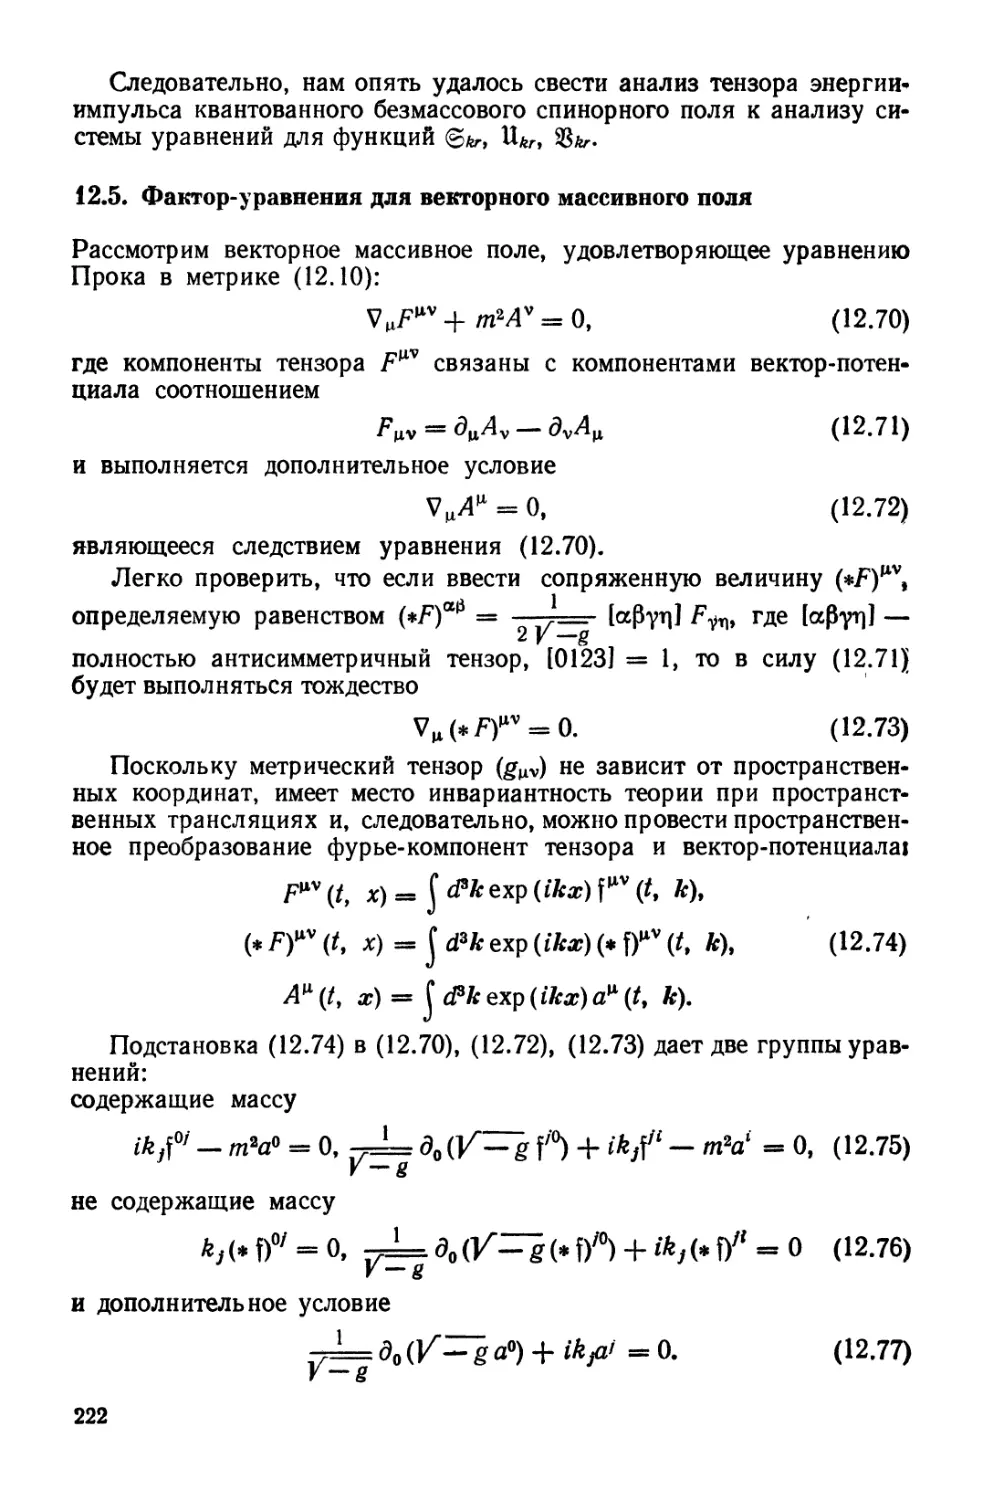 12.5. Фактор-уравнения для векторного массивного поля